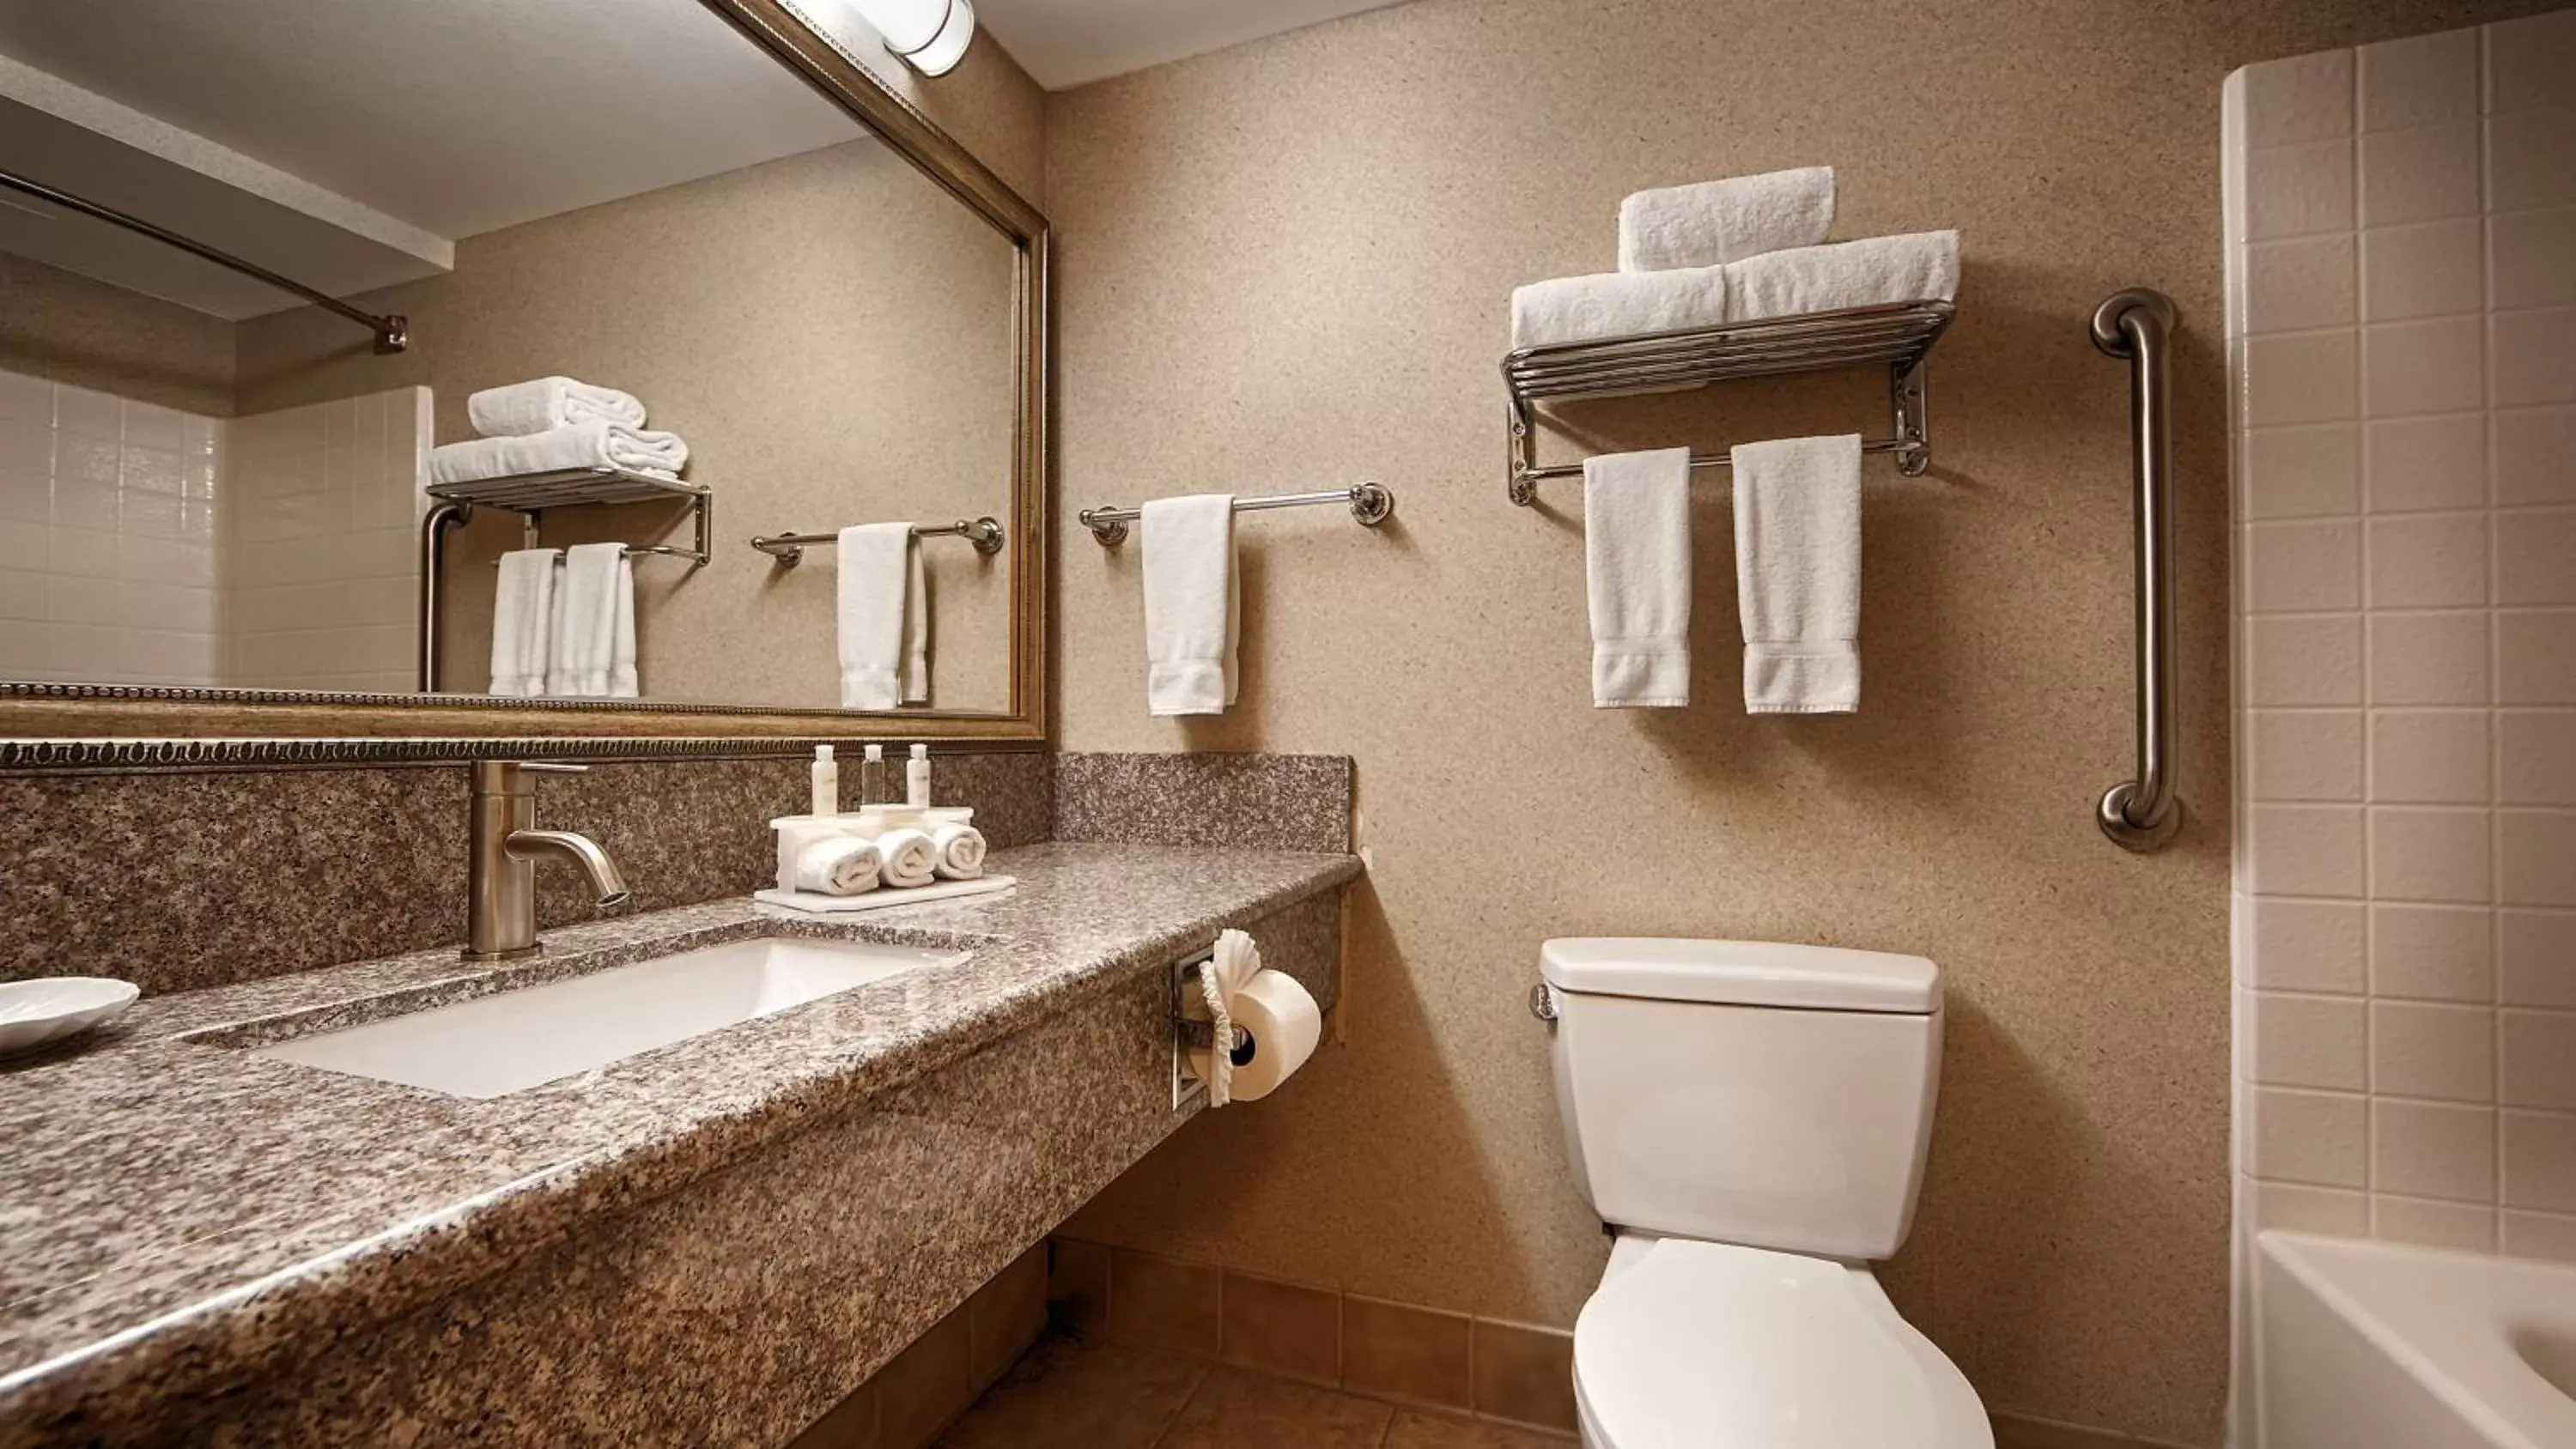 Photo of the whole room, Bathroom in Best Western Plus North Las Vegas Inn & Suites